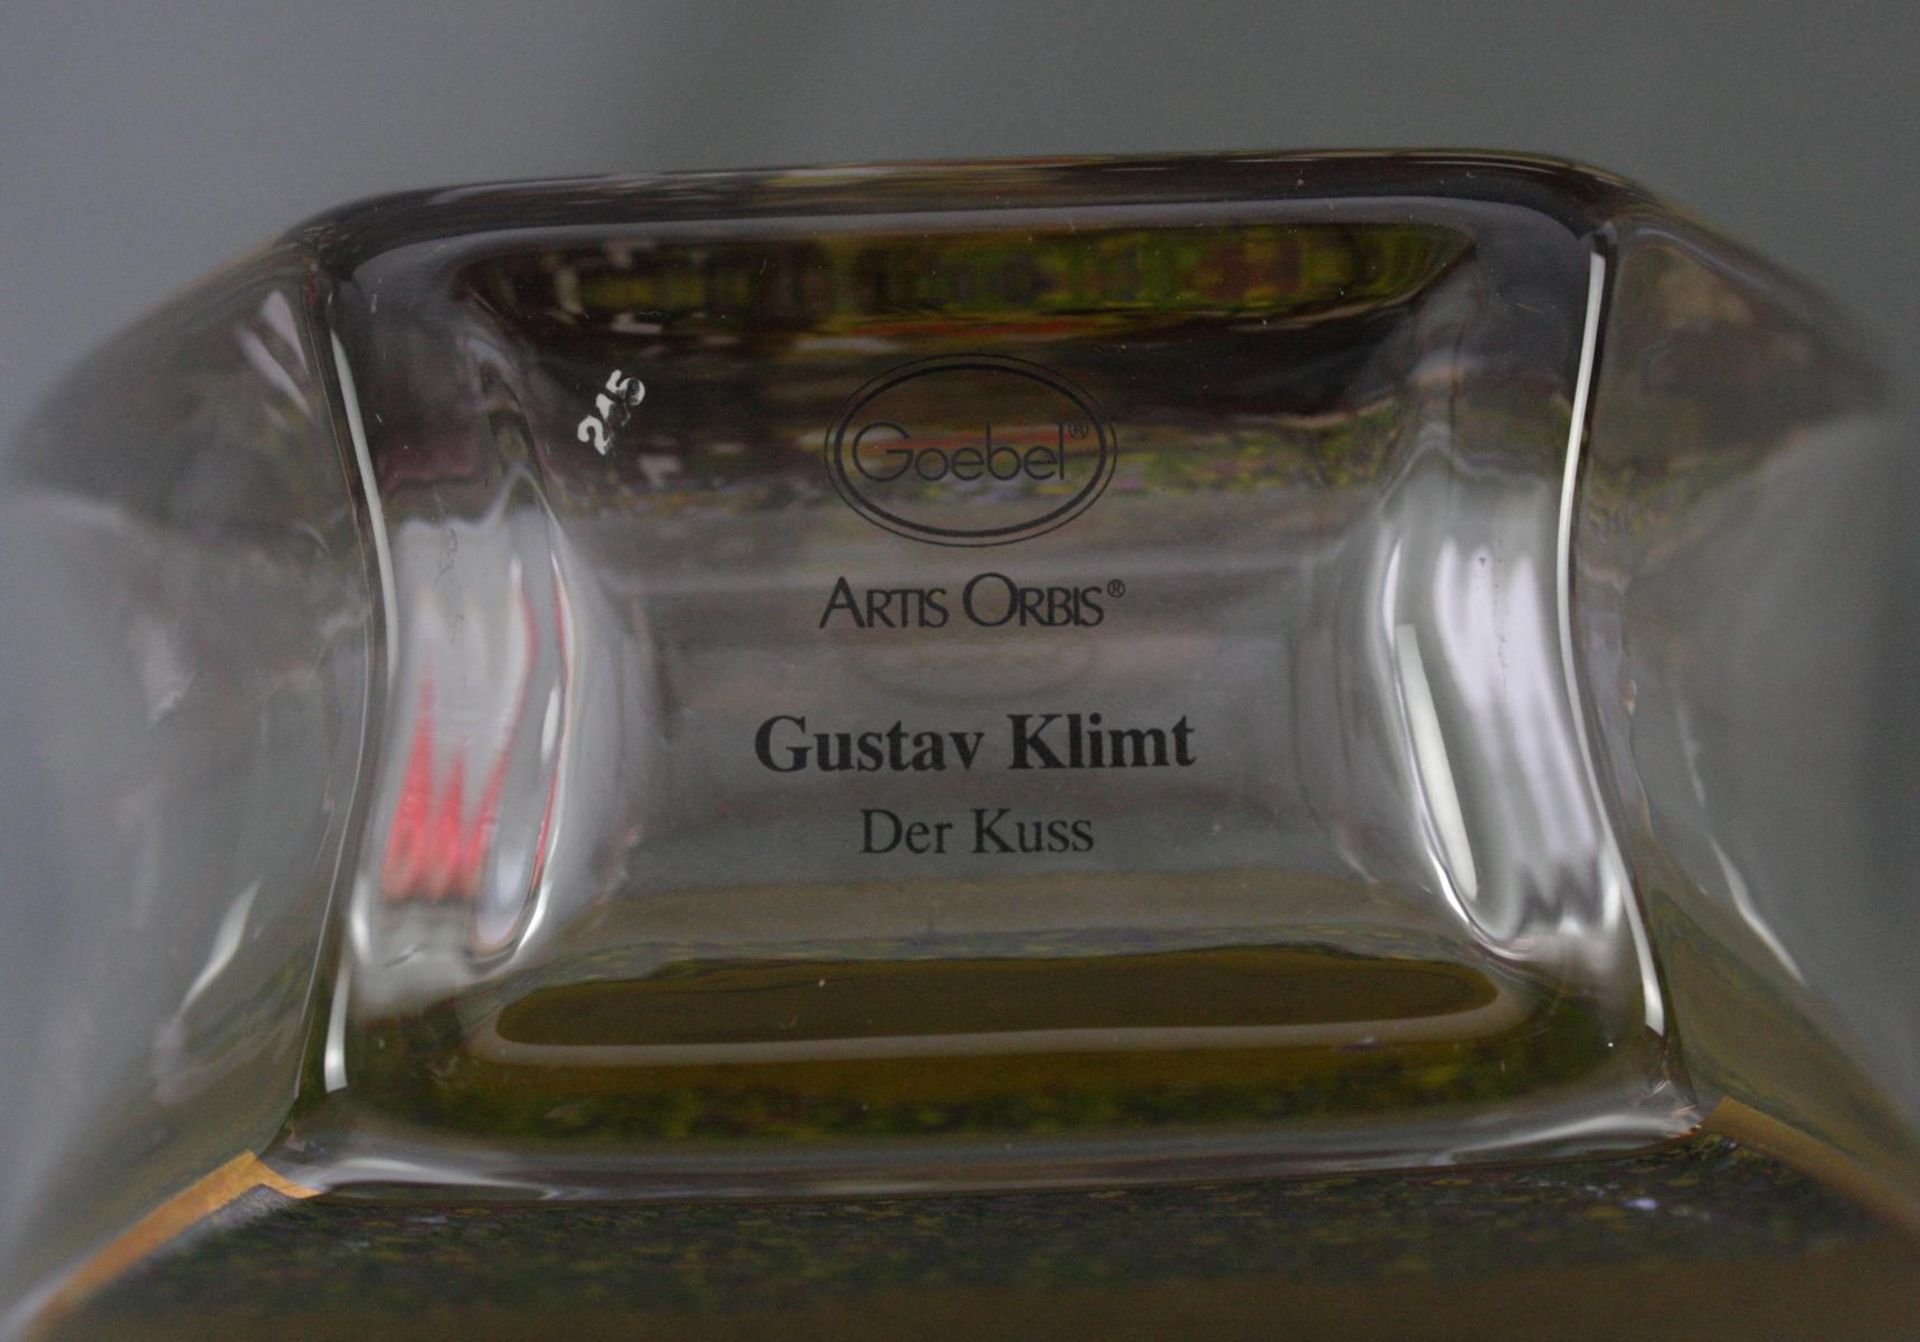 Zwei Goebel Artis Orbis Gustav Klimt Vasen. Porzellan und Glas - Bild 6 aus 7